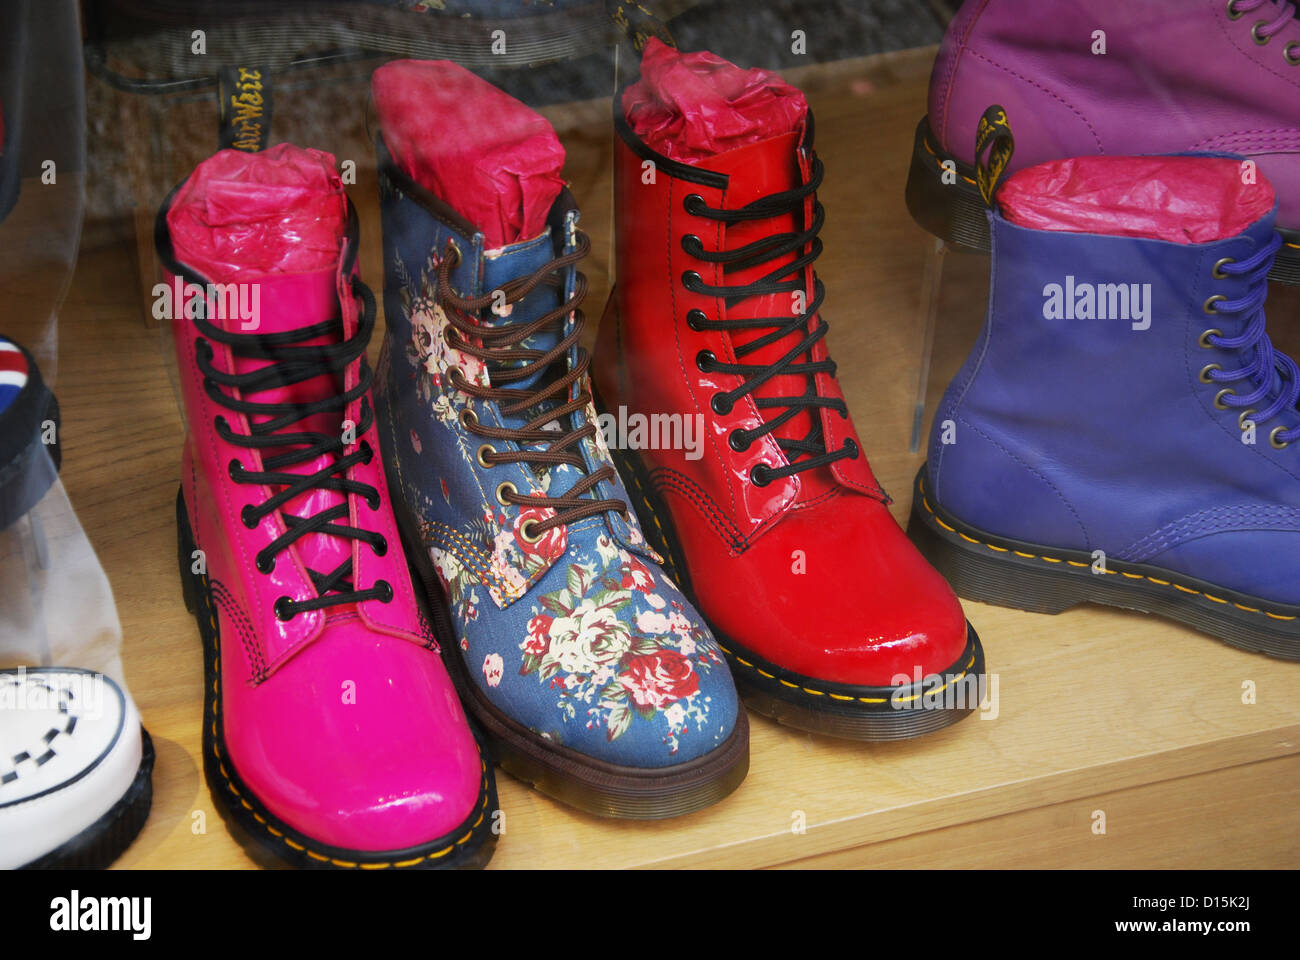 Bunte Dr Martens Schuhe in Canterbury Schaufenster Vereinigtes Königreich  Stockfotografie - Alamy